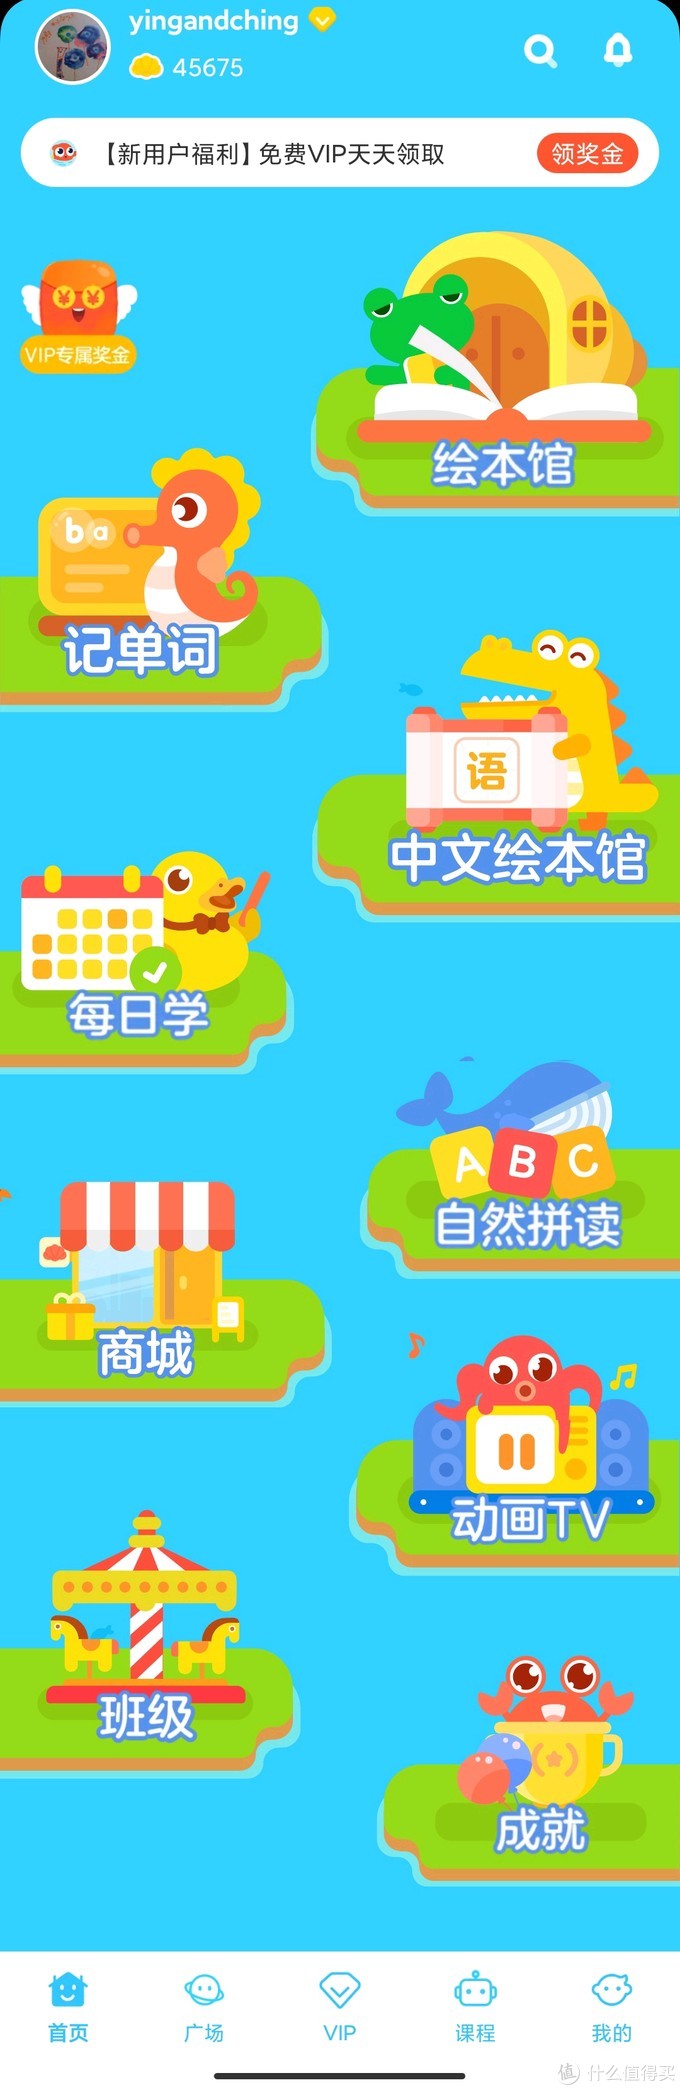 现在的主页面，中文绘本馆也新上了，小学的一年级同步记单词也上新了。感觉伴鱼越做越大，内容越做越丰富了。